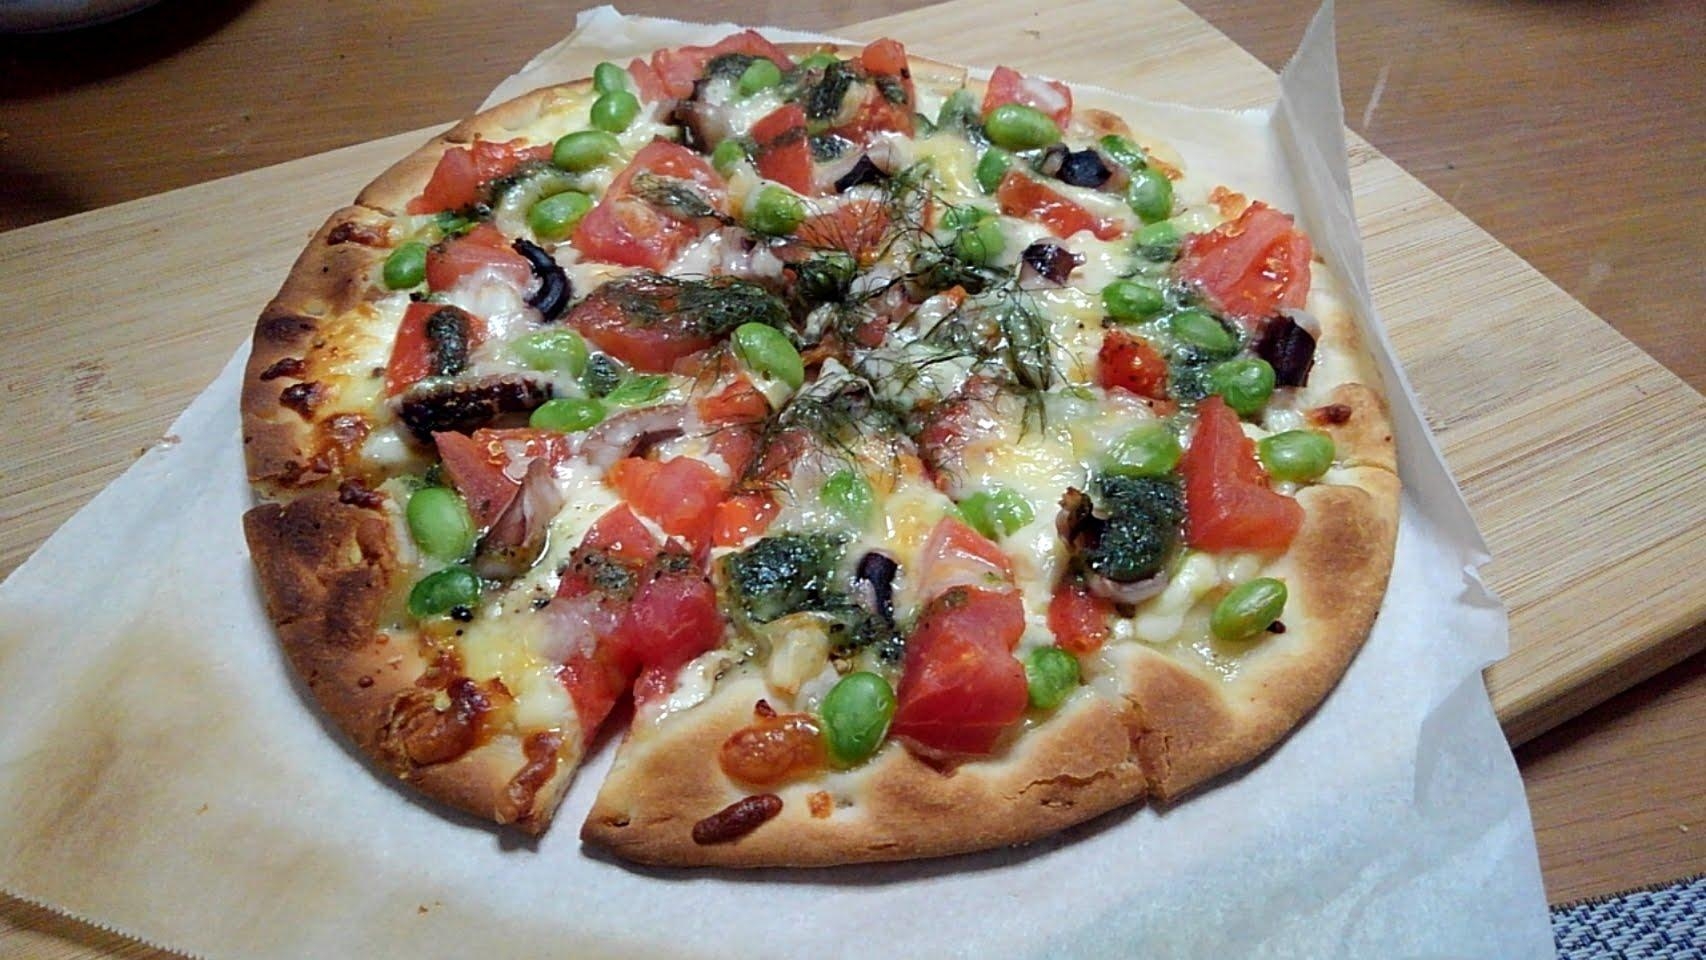 冷凍ピザを使用トマト×枝豆×たこぶつ×バジルピザ